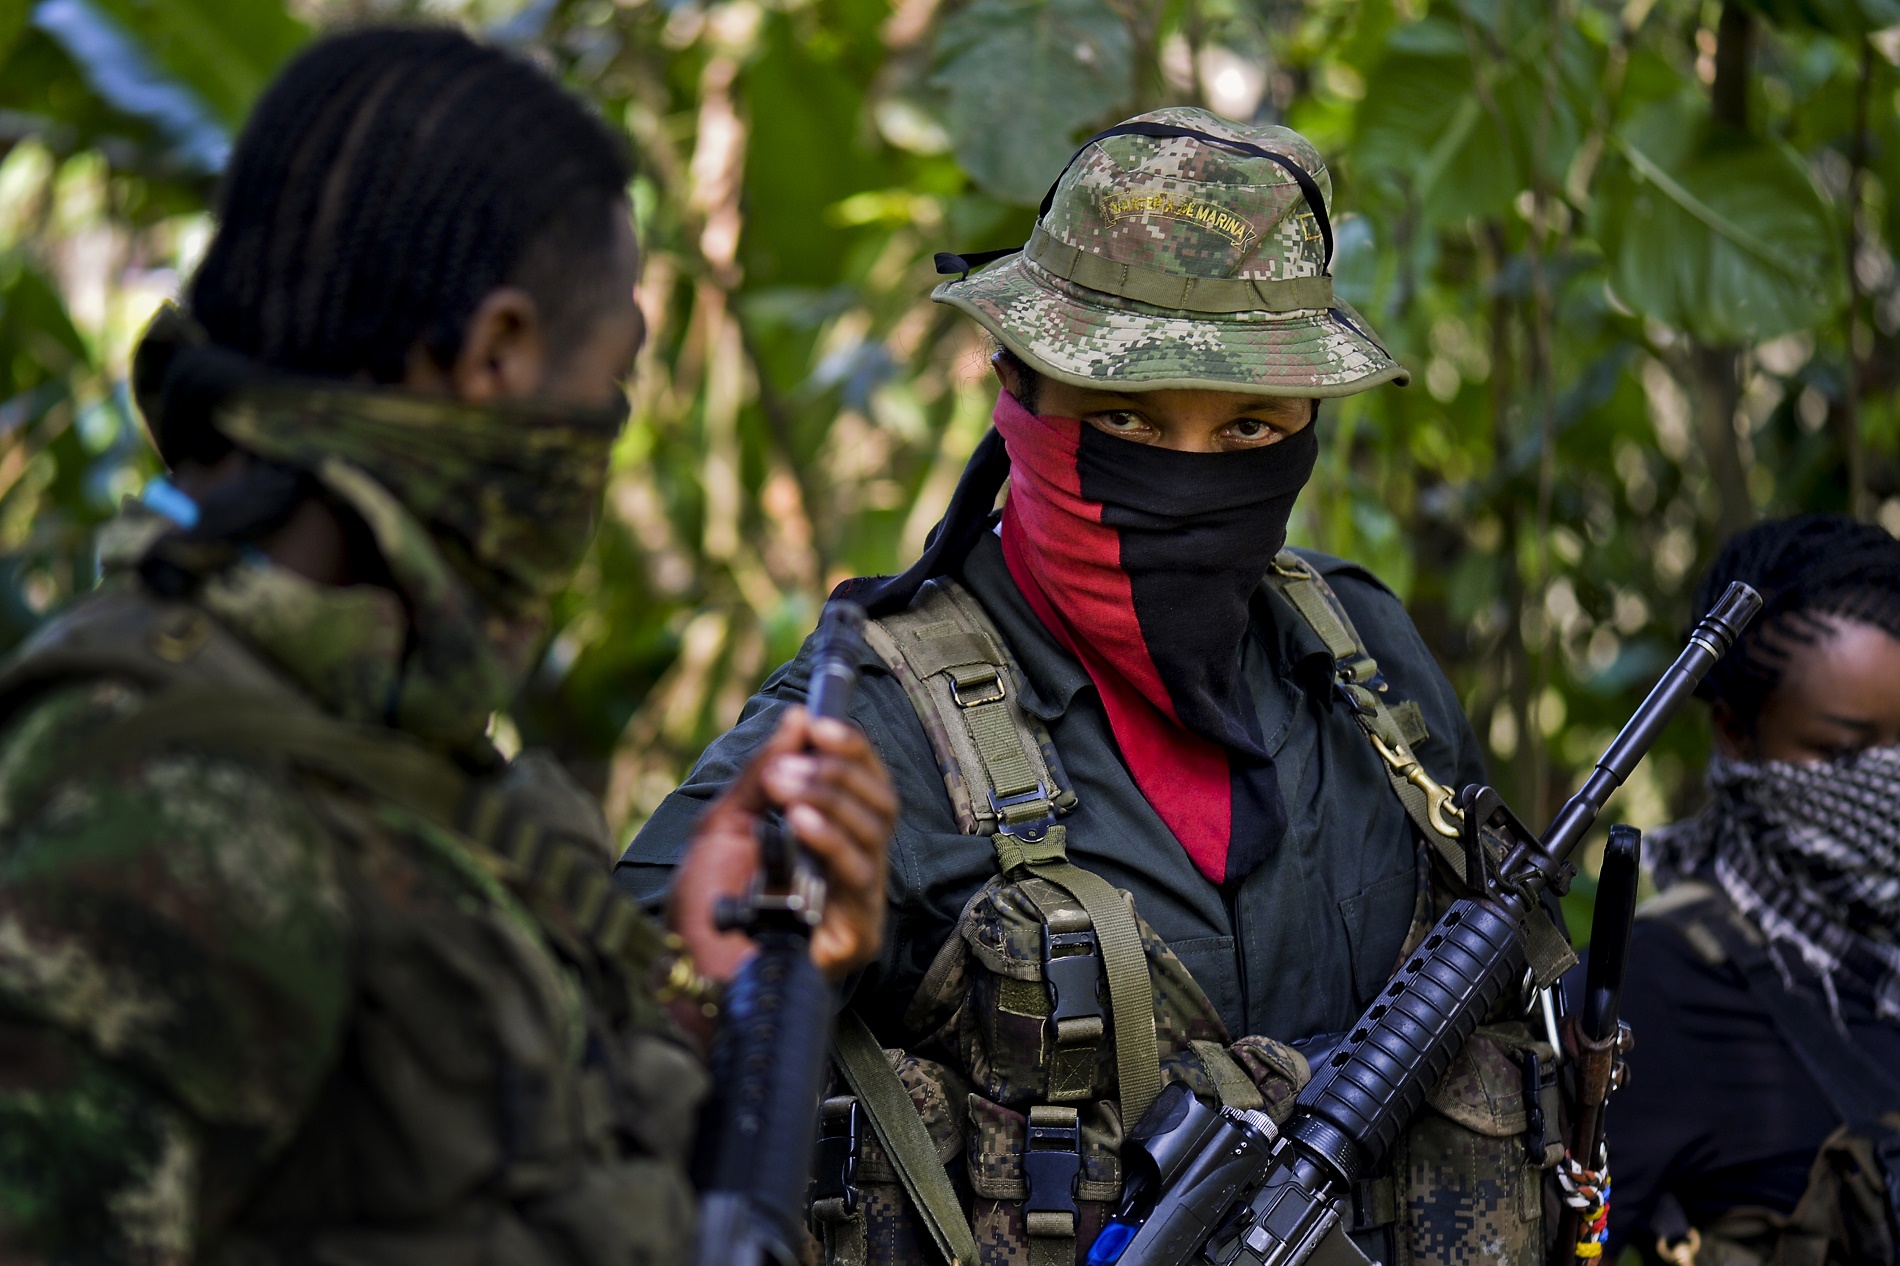 La guerrilla liberó a ocho cautivos, pero los secuestros siguen dificultando paz en Colombia